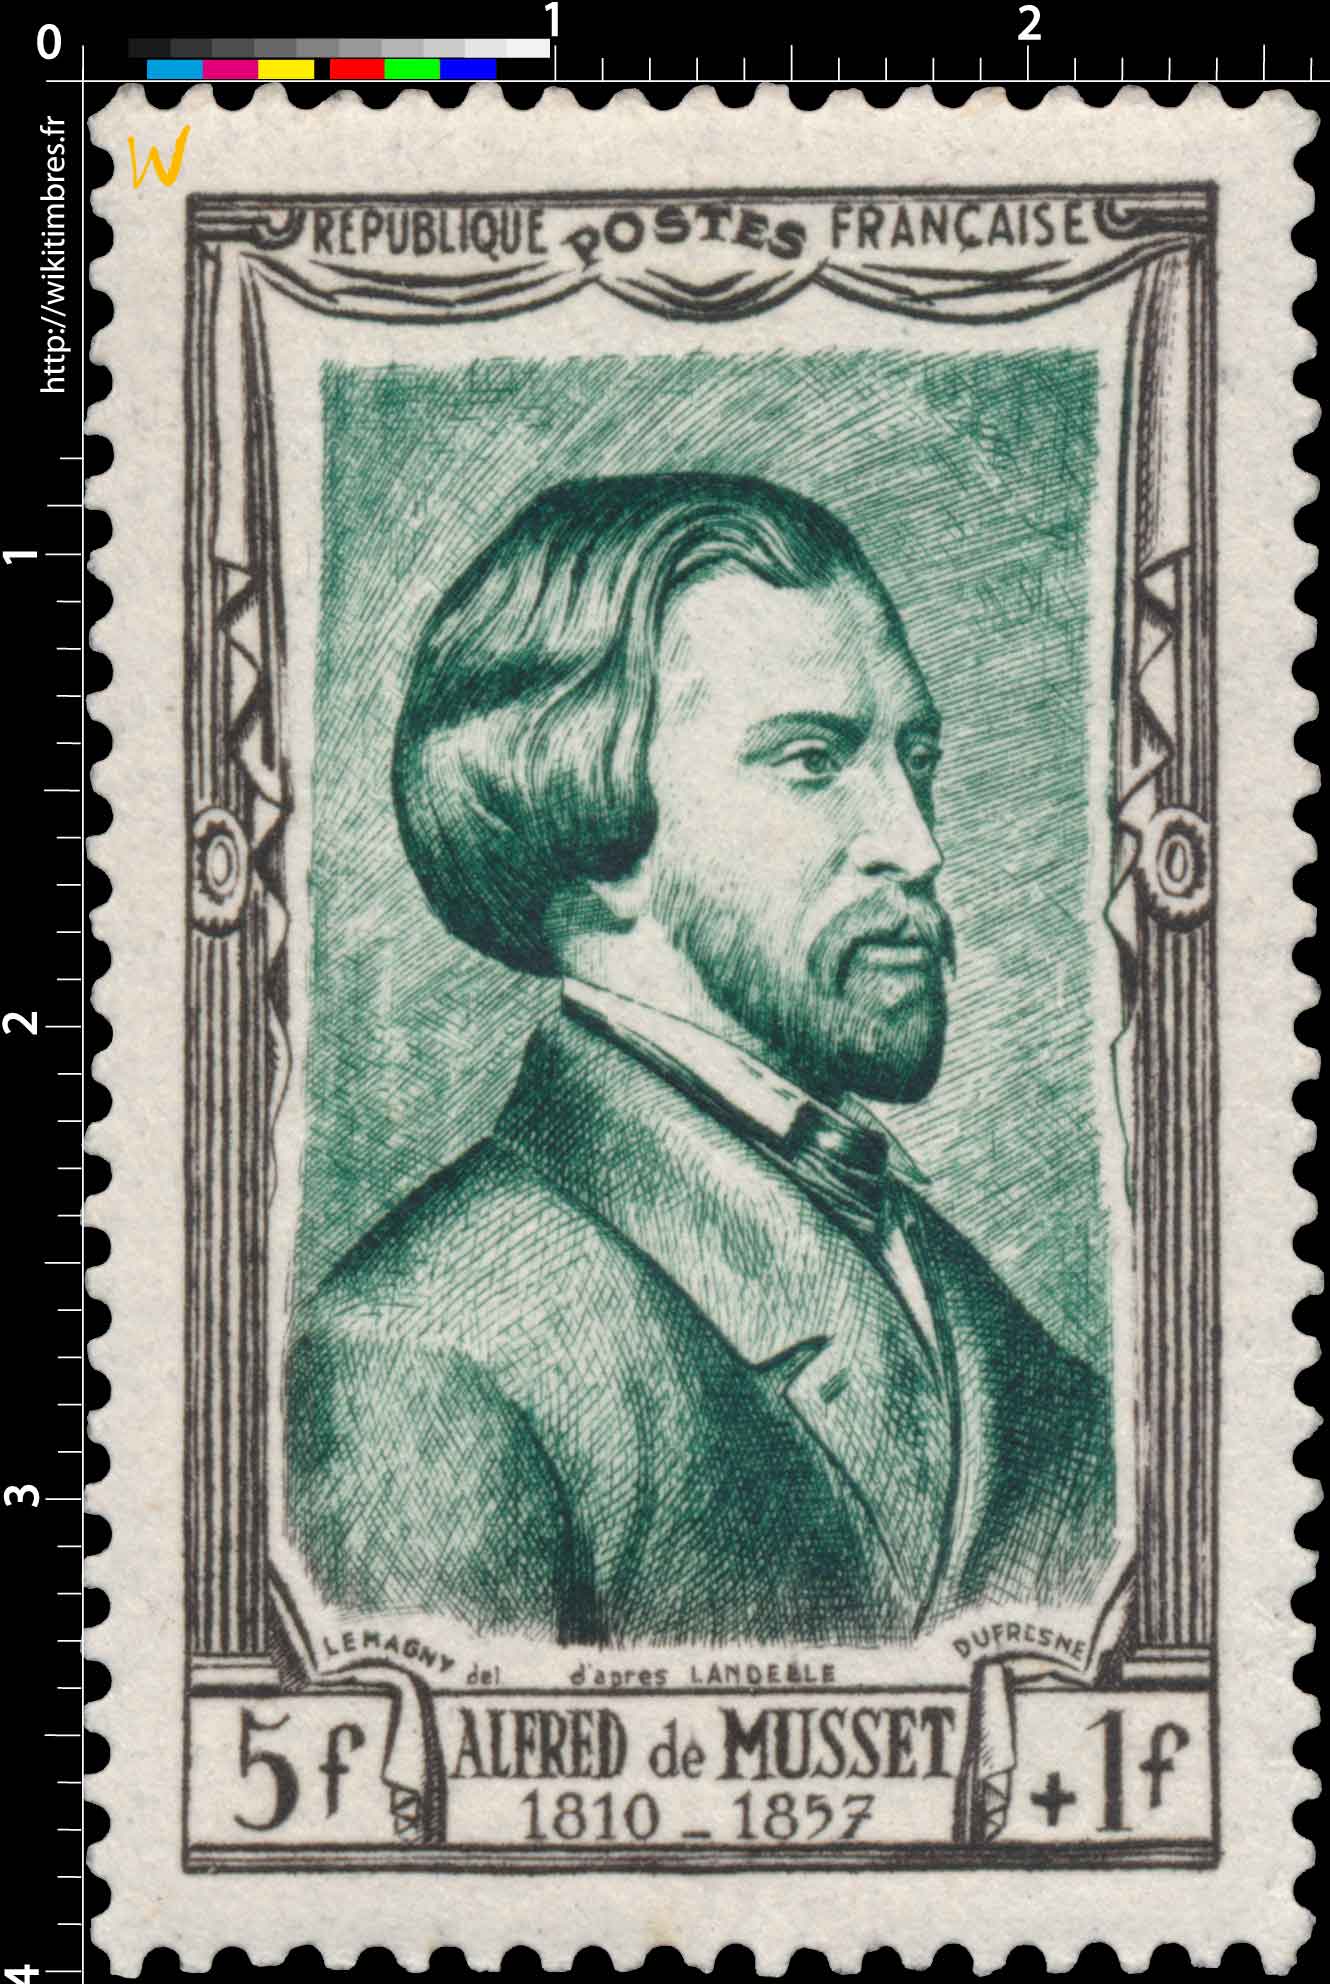 ALFRED de MUSSET 1810 -1857